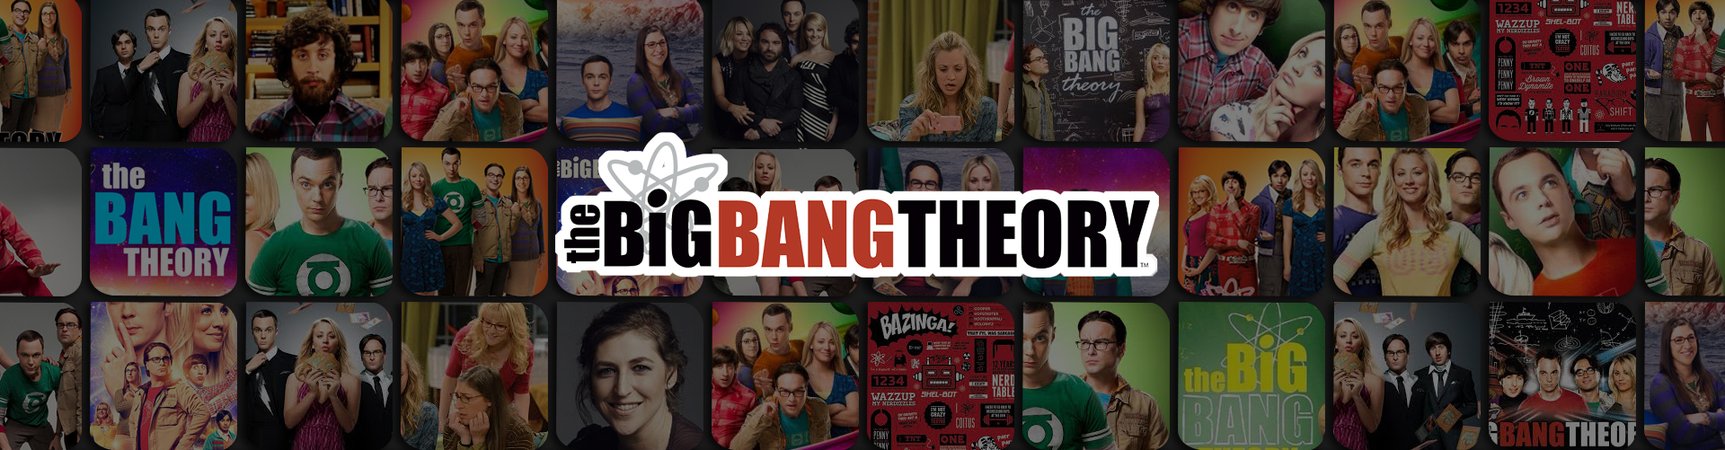 The Big Bang Theory Coffee Mugs